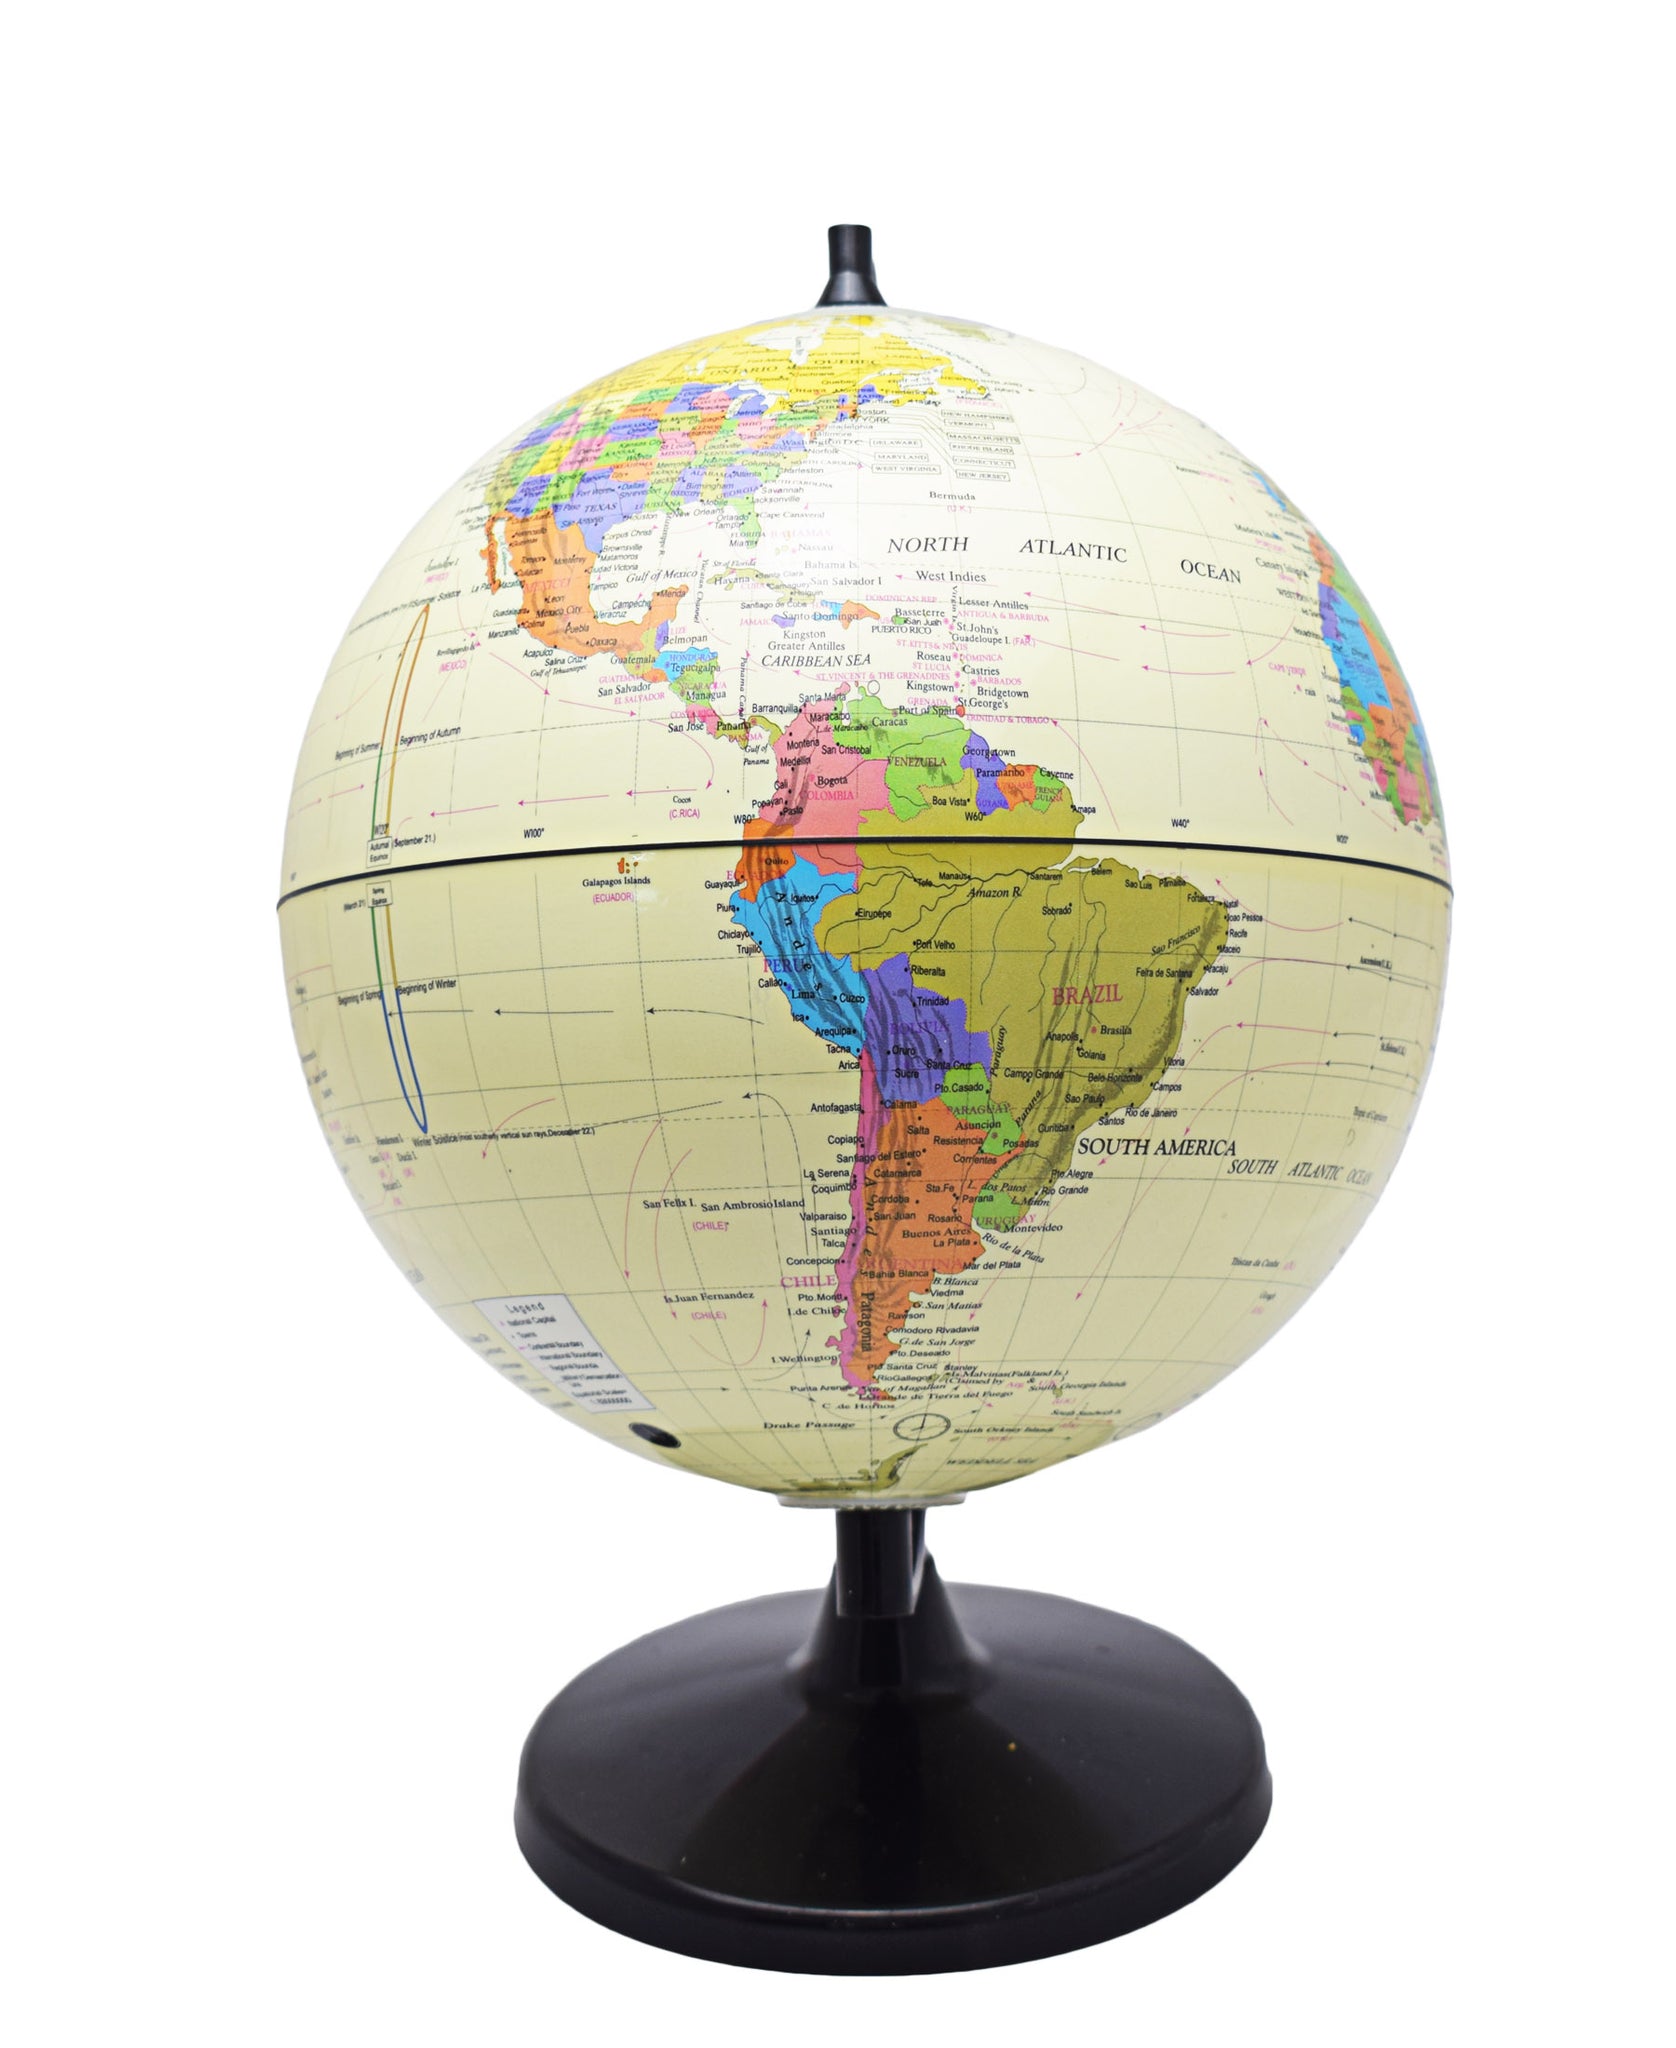 Urban Decor Retro World Globe 20cm With Stand - Cream